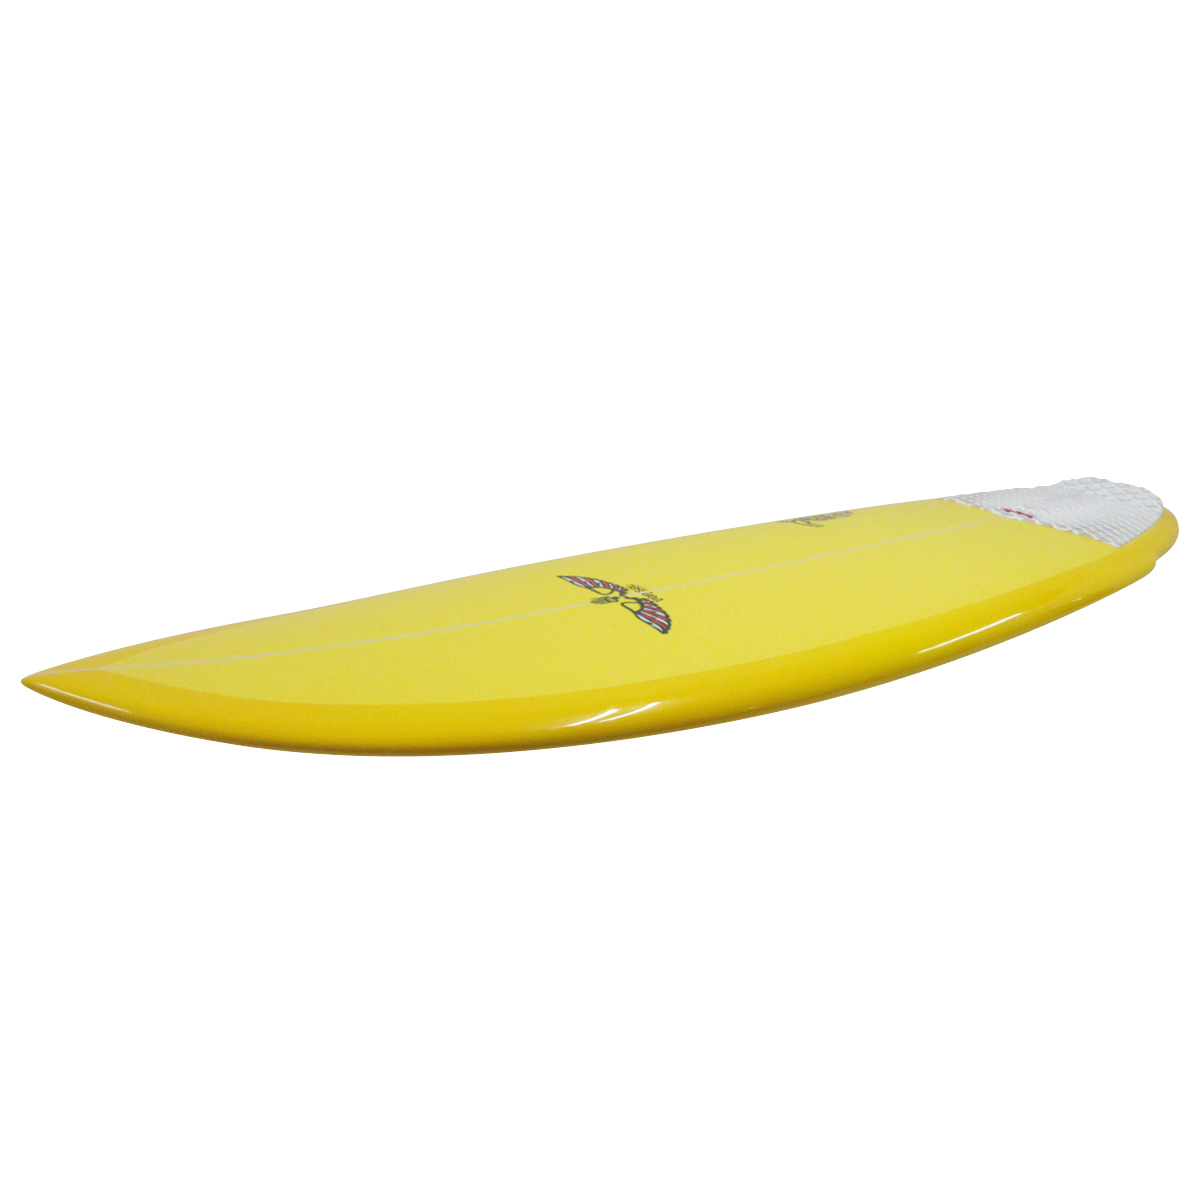 VONSOL SURFBOARDS / SHADOW 5`11